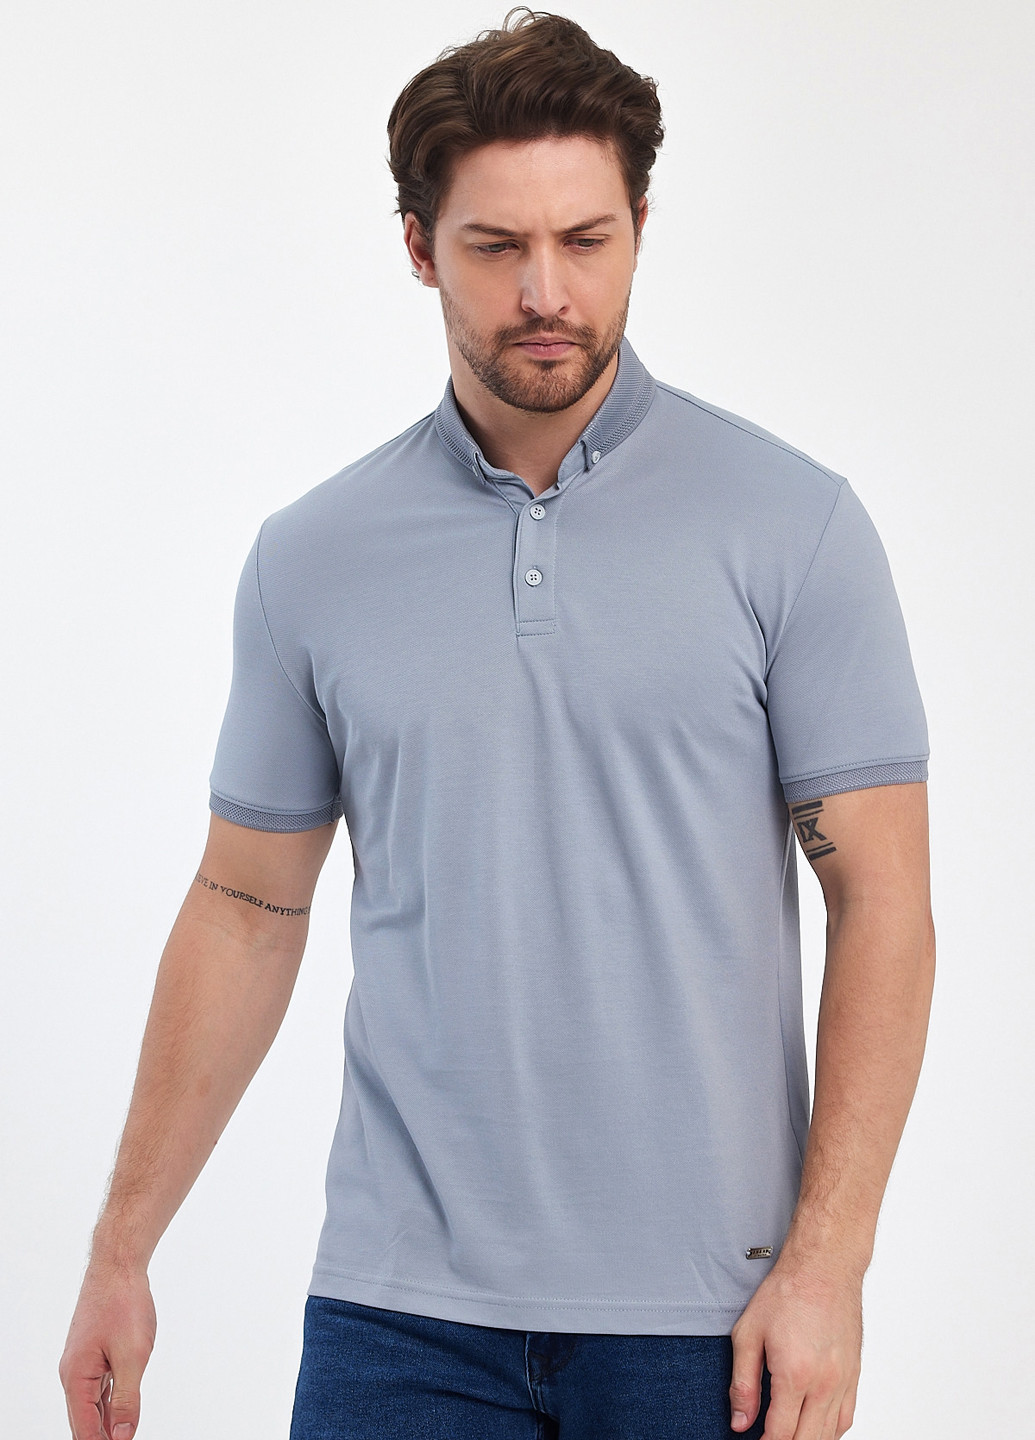 Светло-серая футболка-поло для мужчин Trend Collection однотонная